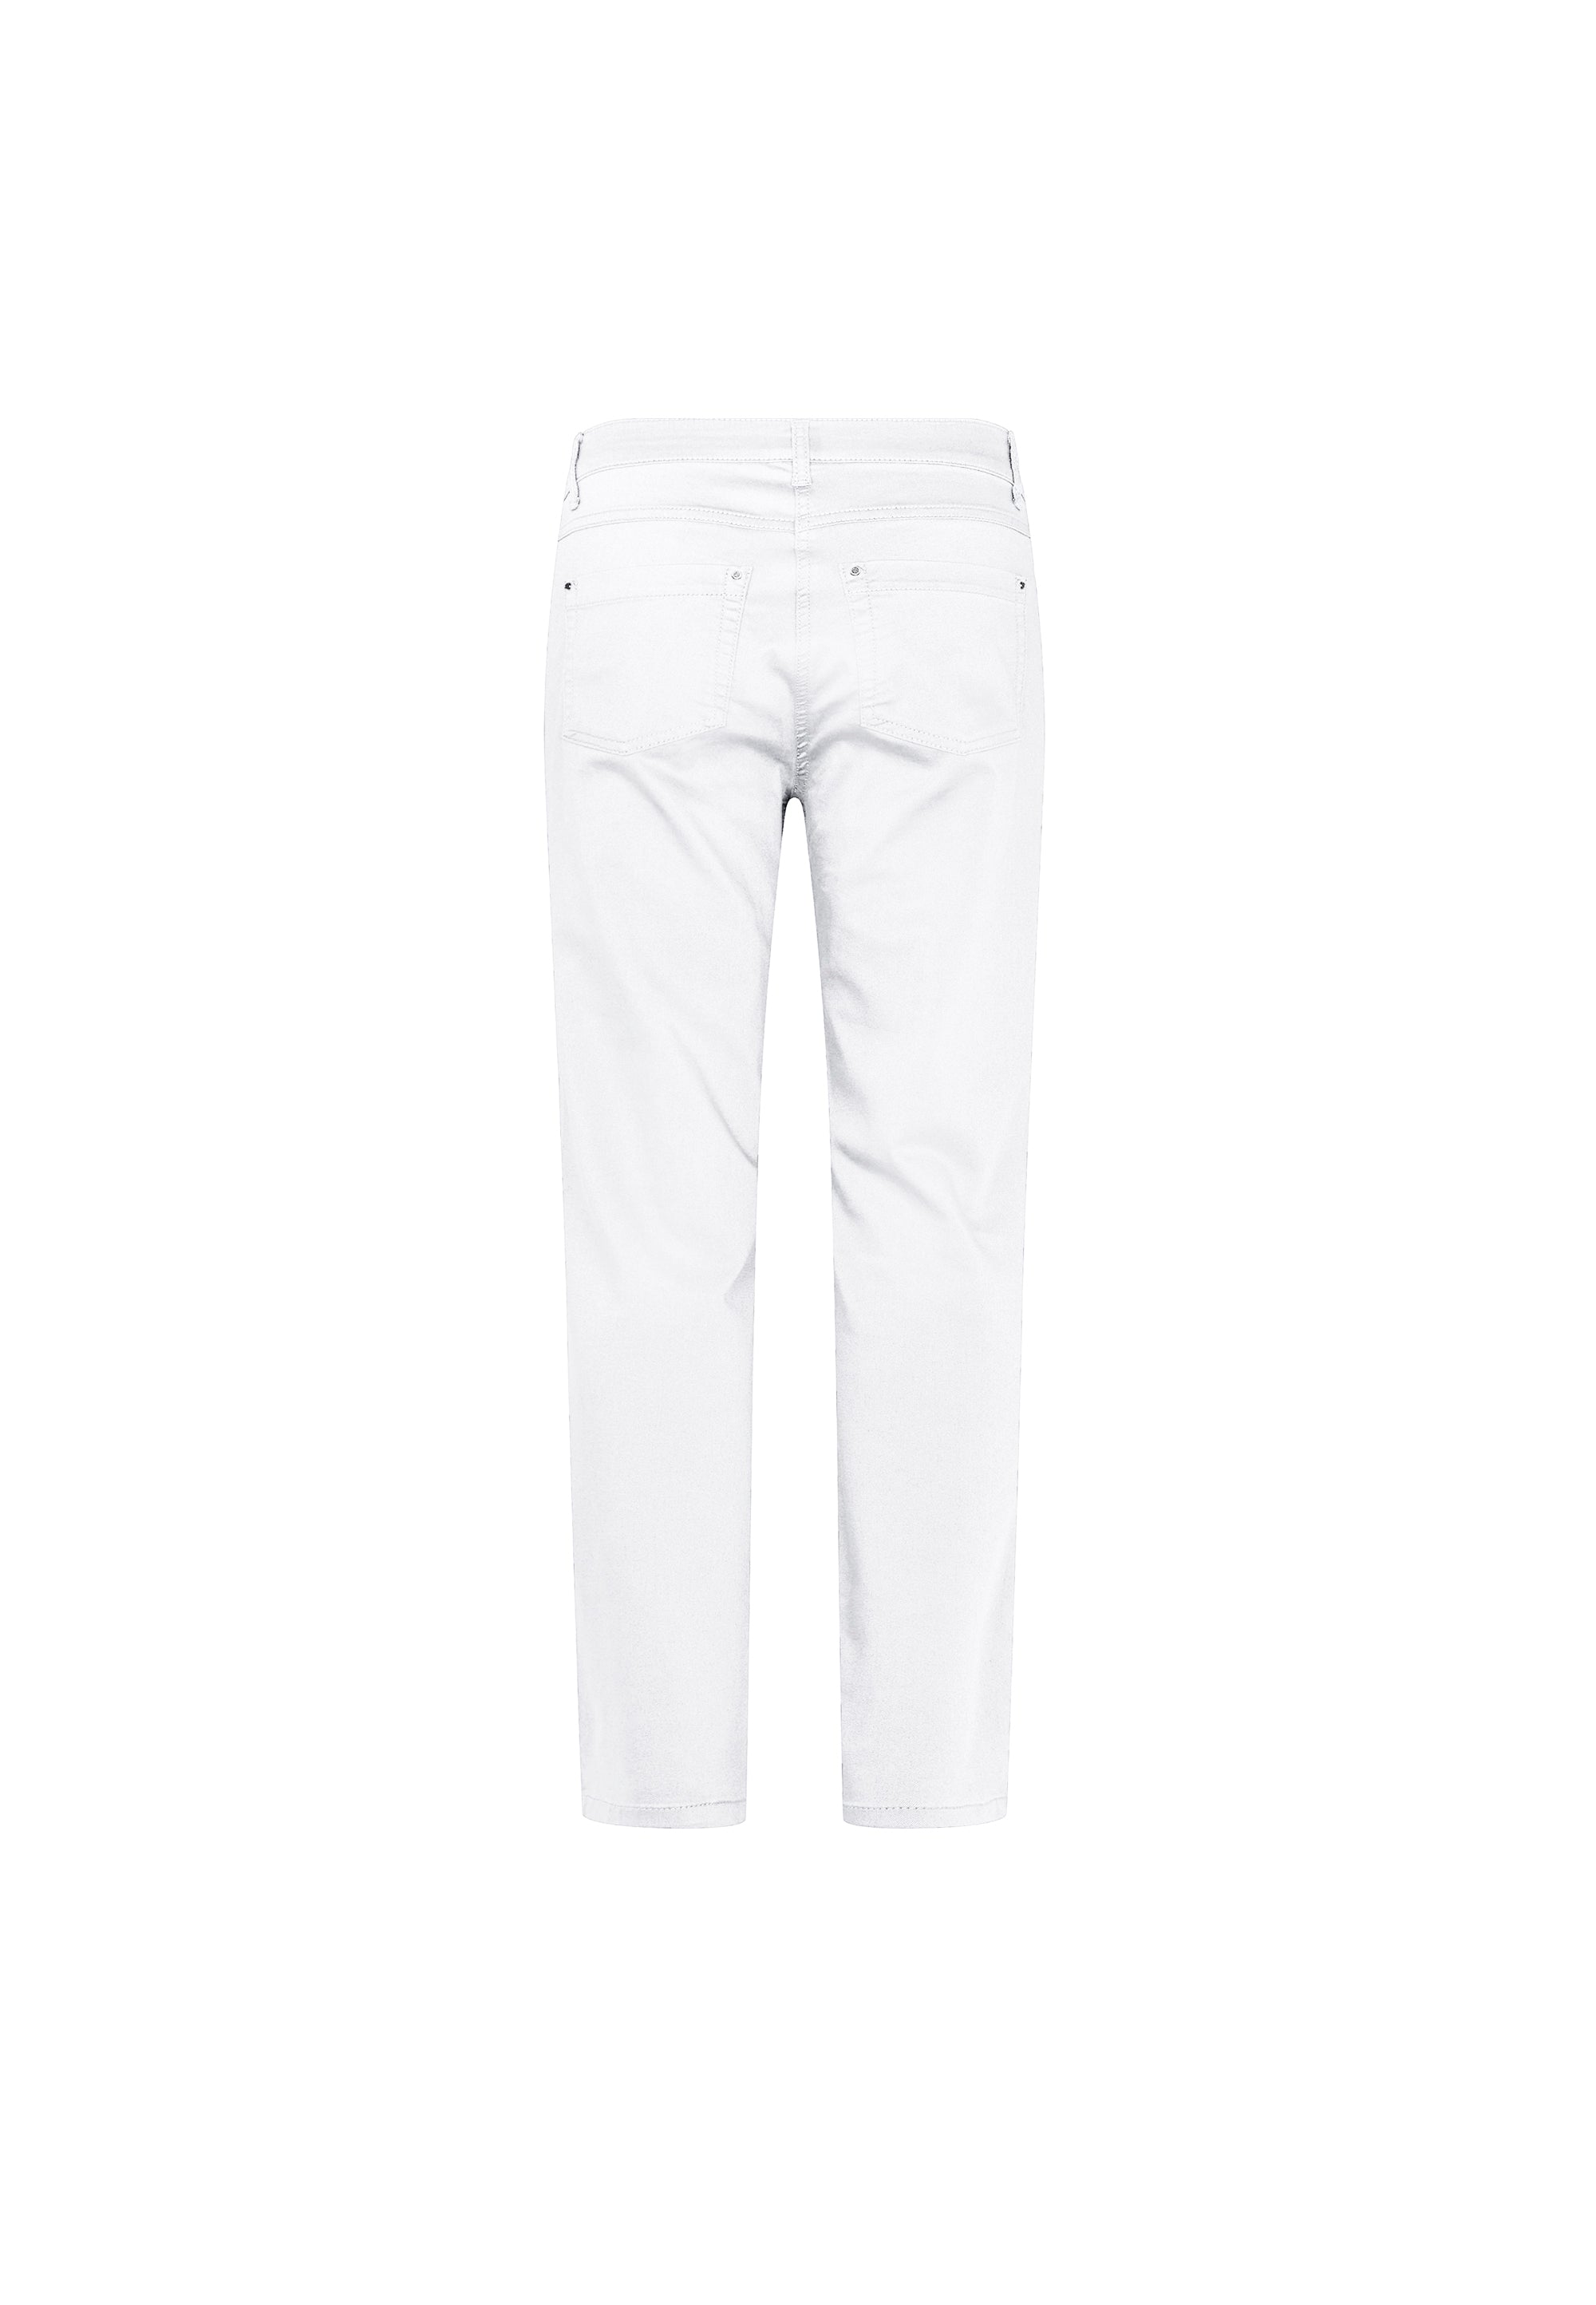 LAURIE Charlotte Regular - Medium Length Trousers REGULAR 10000 White